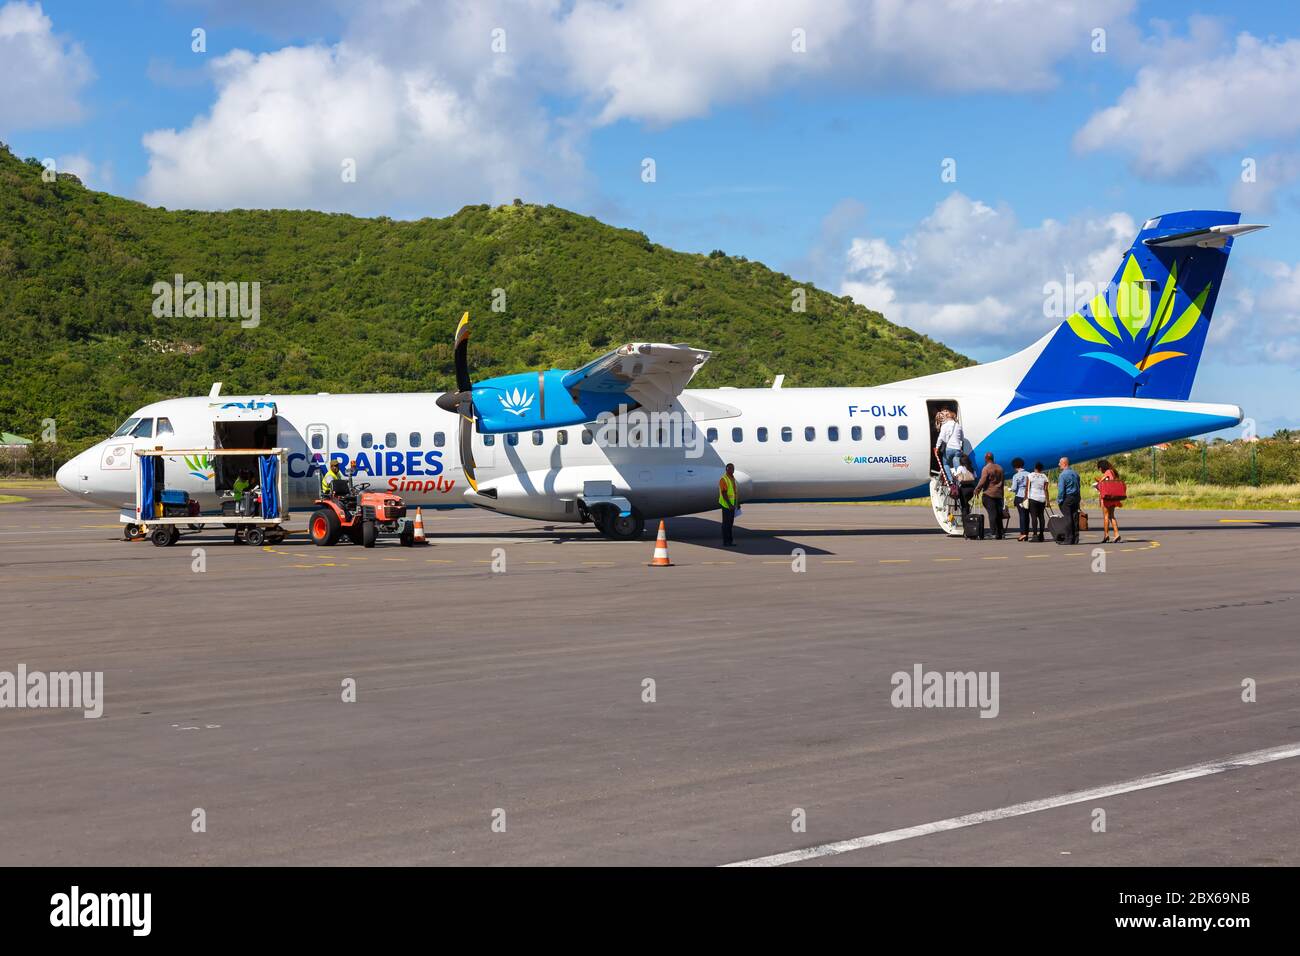 Saint Martin, France - 19 septembre 2016 : avion Air Caraibes simplement ATR 72-500 à l'aéroport de Saint Martin (SFG) en France. Banque D'Images